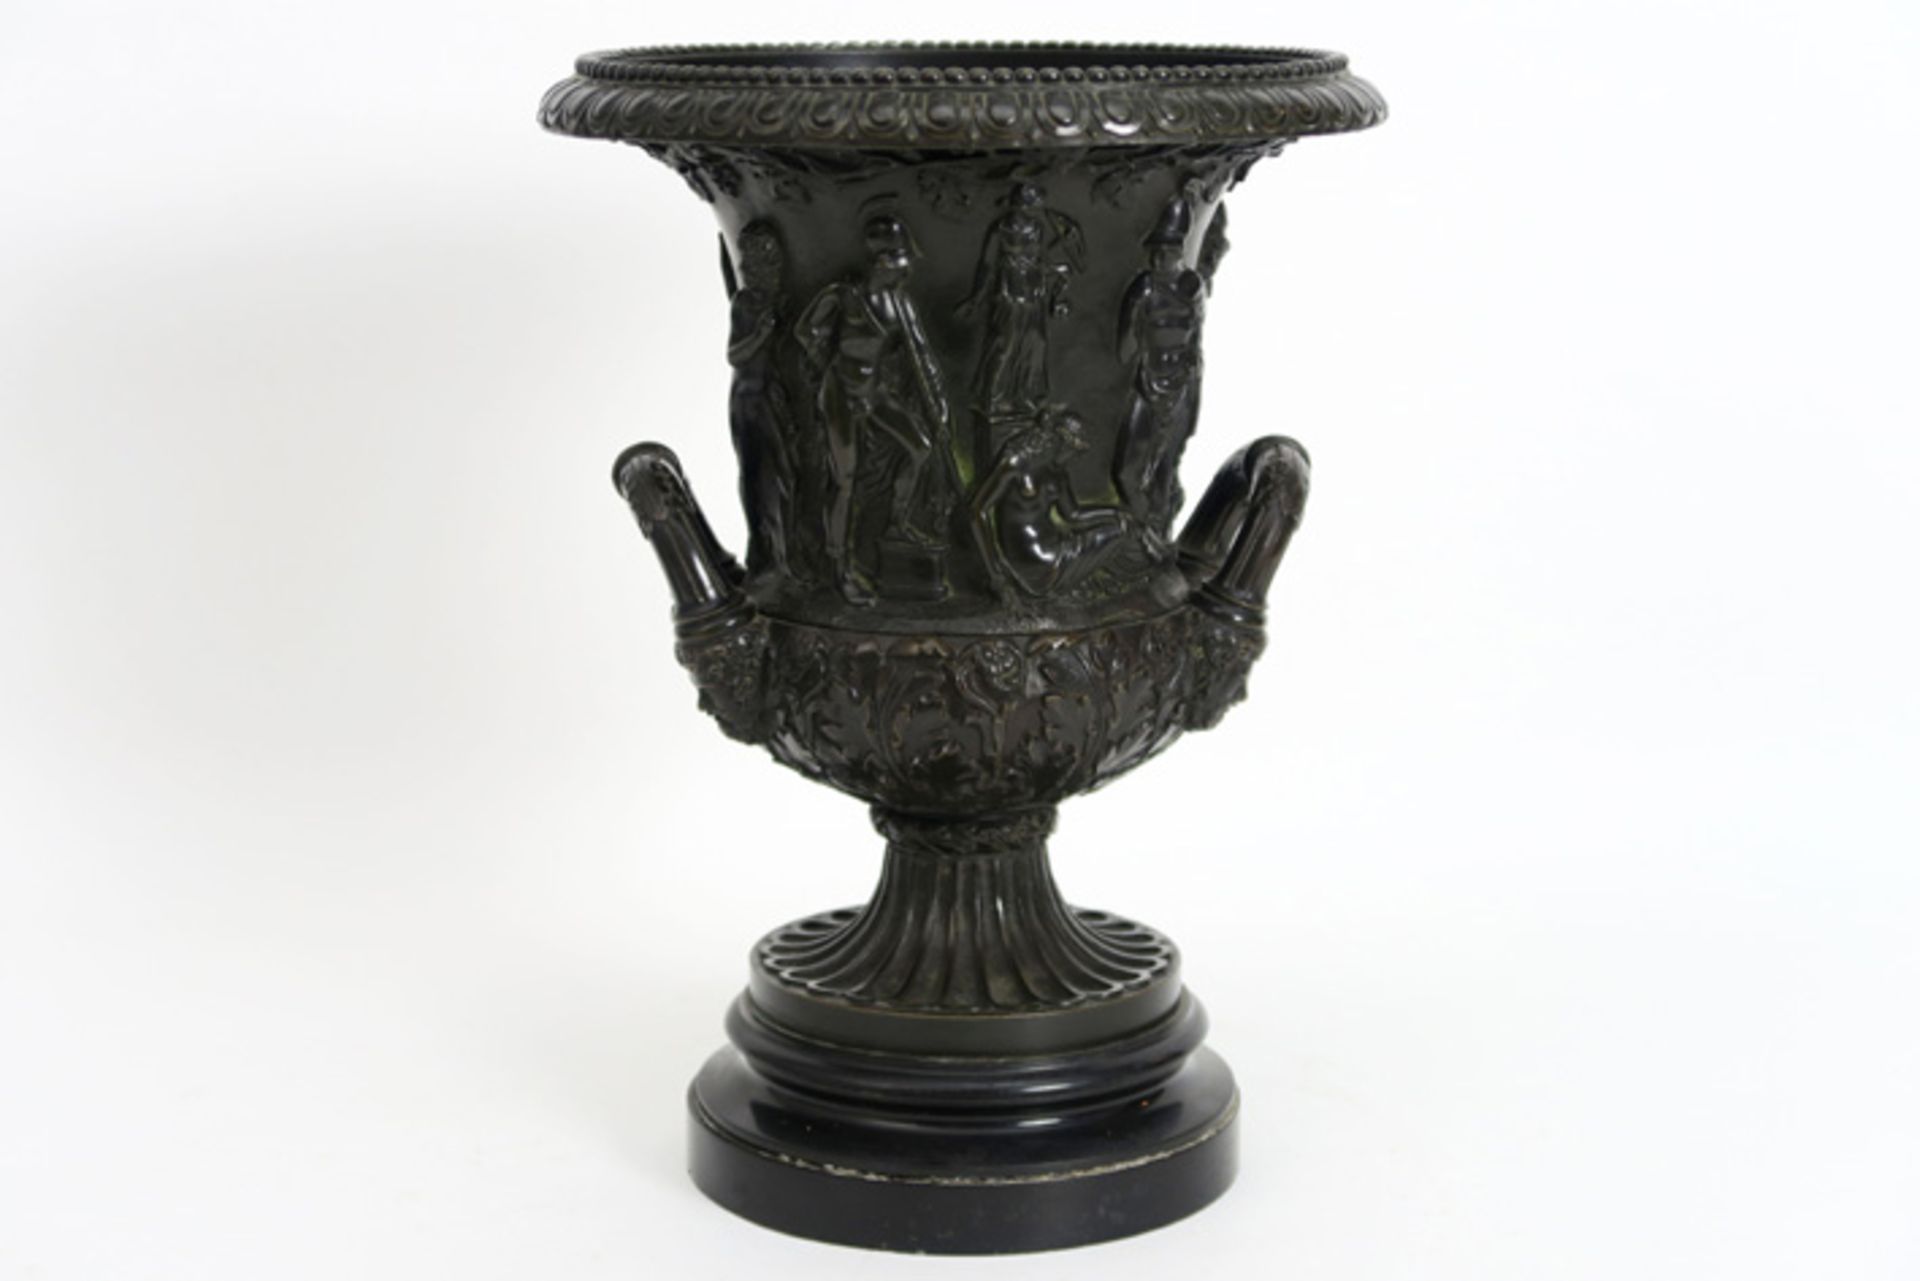 Urnvormige bronzen vaas in Empire-stijl met een bas-reliëf van figuren en op marmeren basis - hoogte